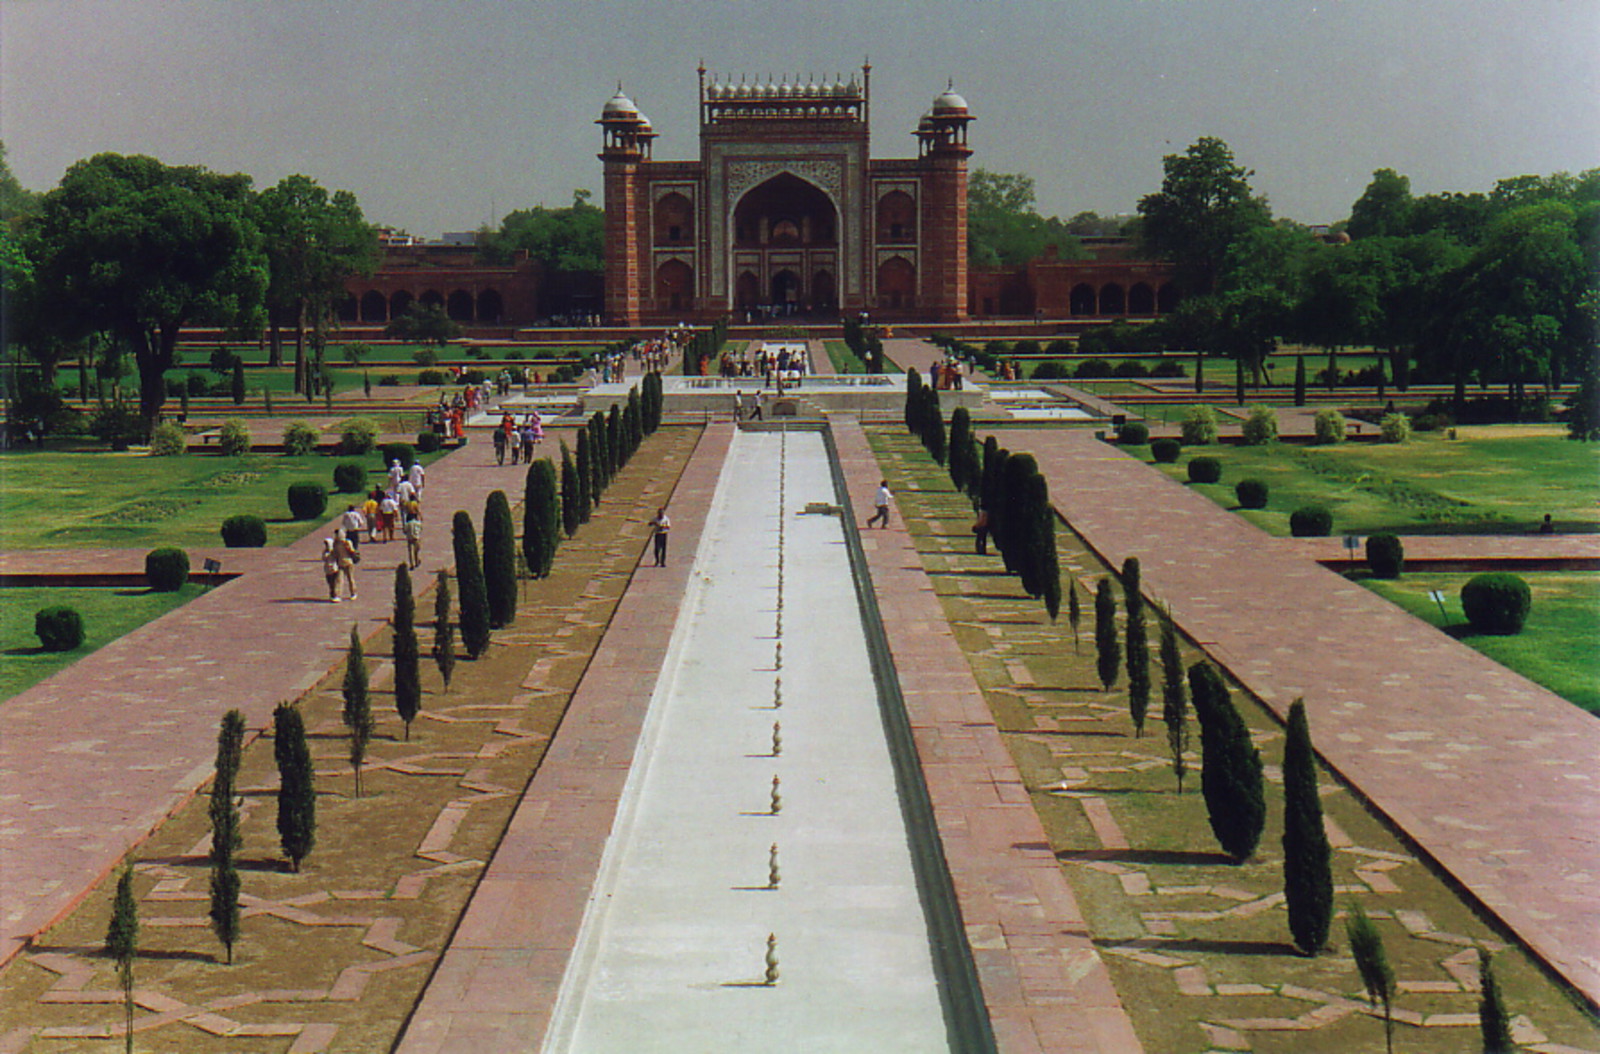 The Taj Mahal's entrance gate